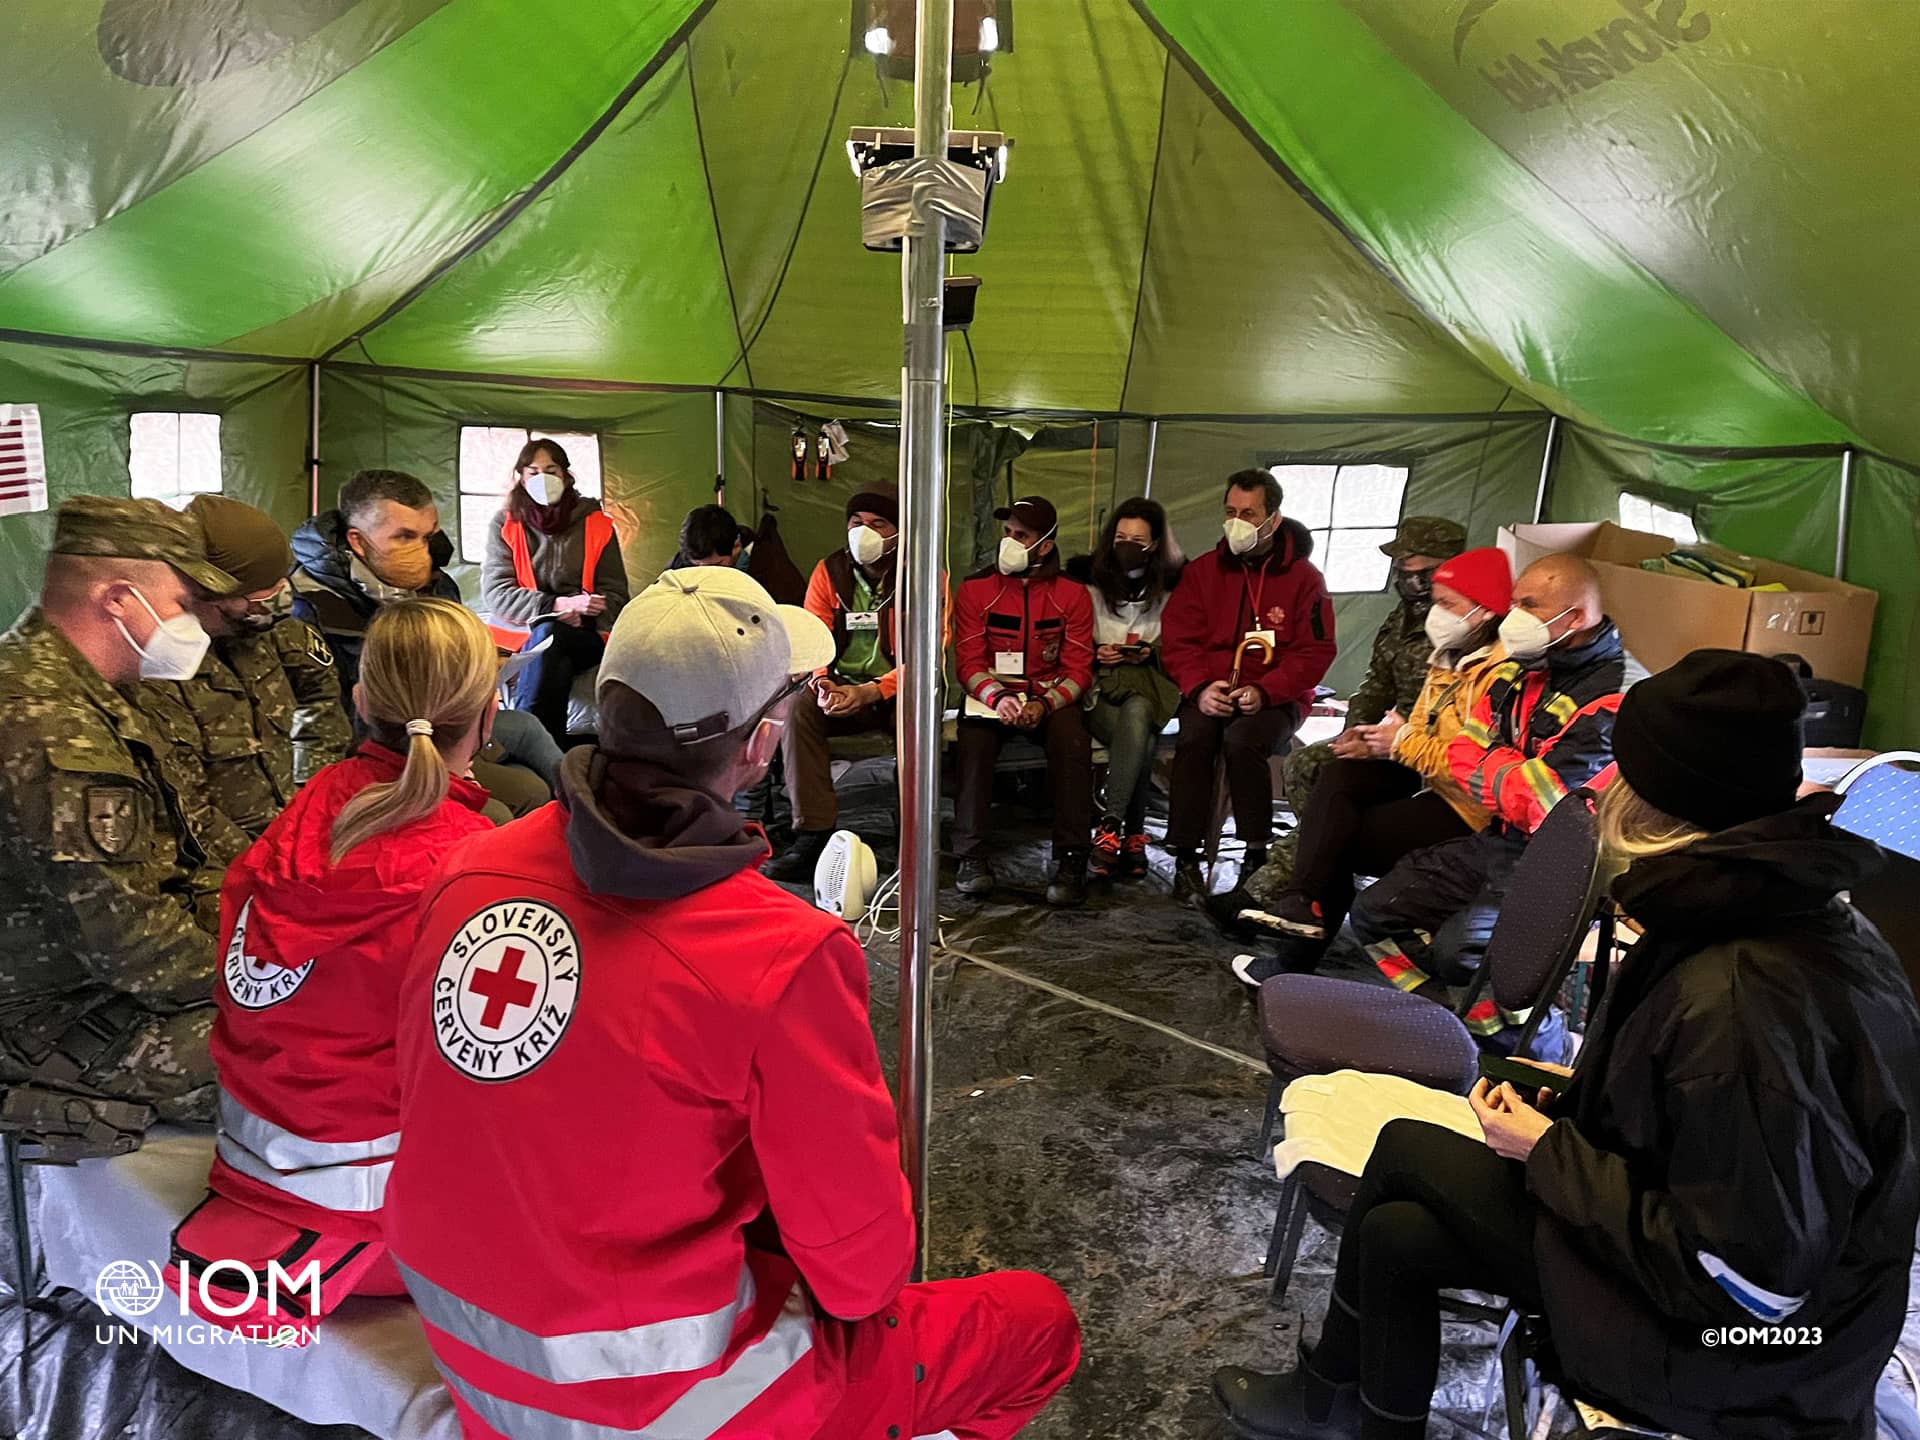 Od februára 2022 IOM zorganizovala 100 školení, seminárov a workshopov týkajúcich sa ochrany pred obchodovaním s ľuďmi pre takmer 1 300 pracovníkov v teréne, partnerov, zdravotníckych profesionálov, dobrovoľníkov a humanitárnych pracovníkov na Slovensku. Foto © Medzinárodná organizácia pre migráciu (IOM) 2023.